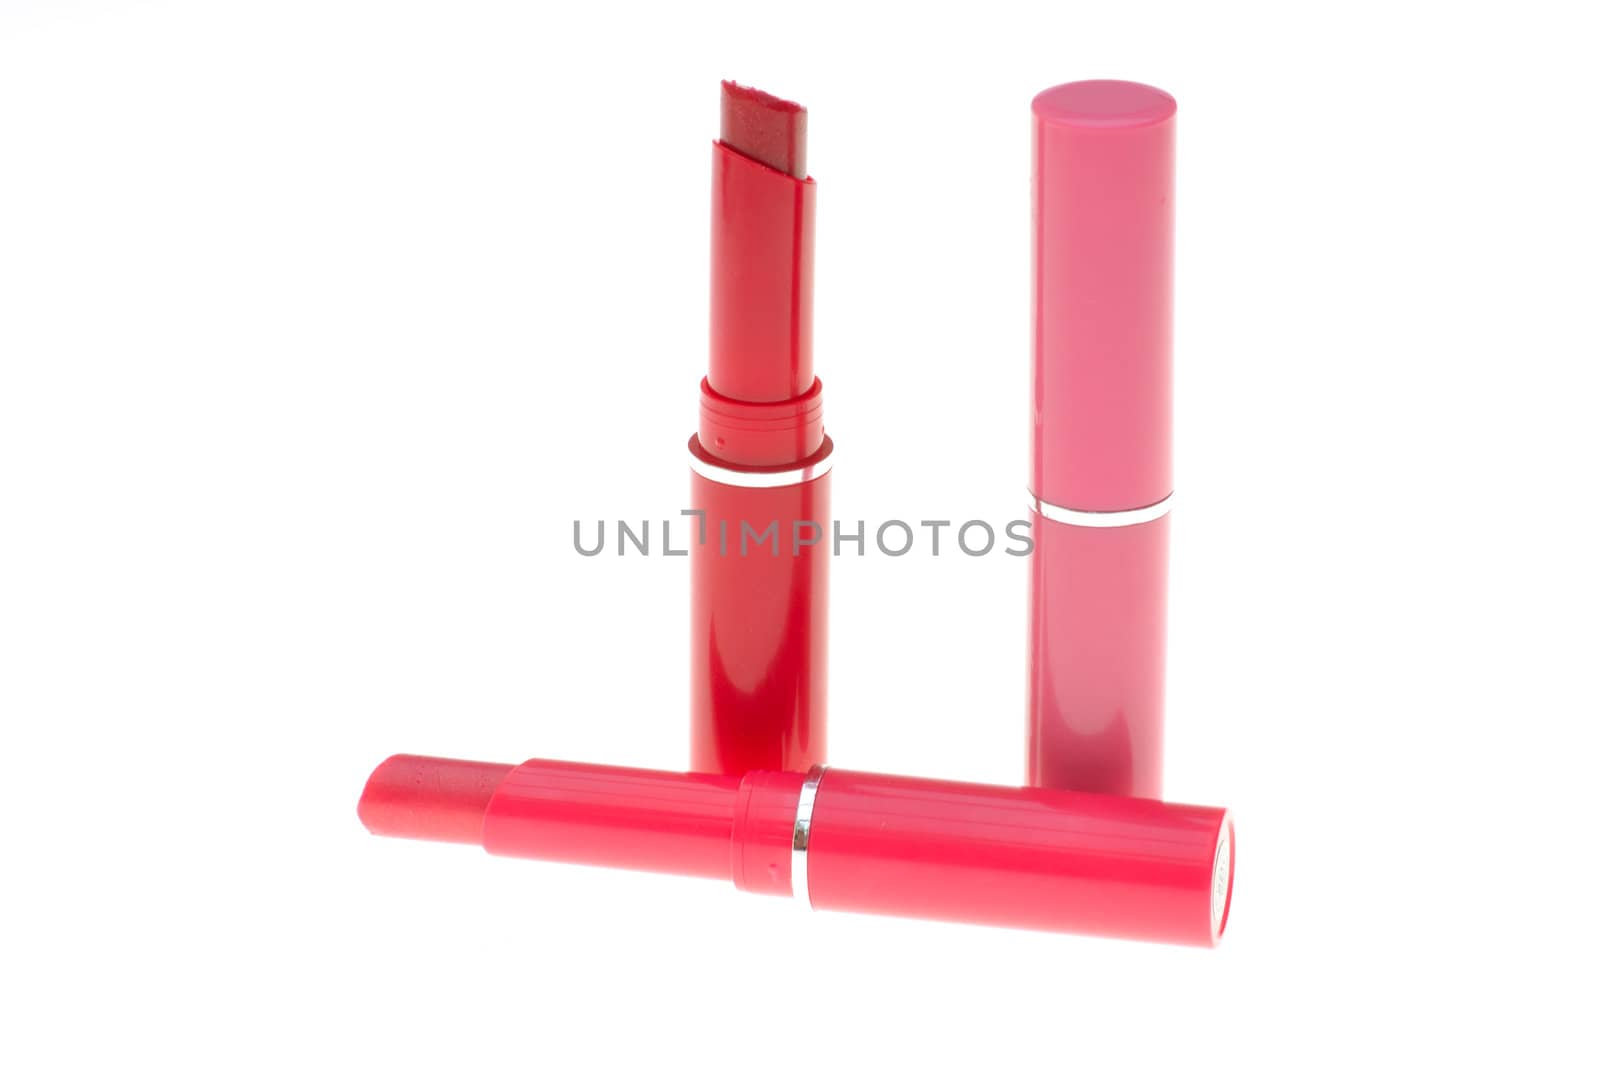 Three red lipsticks